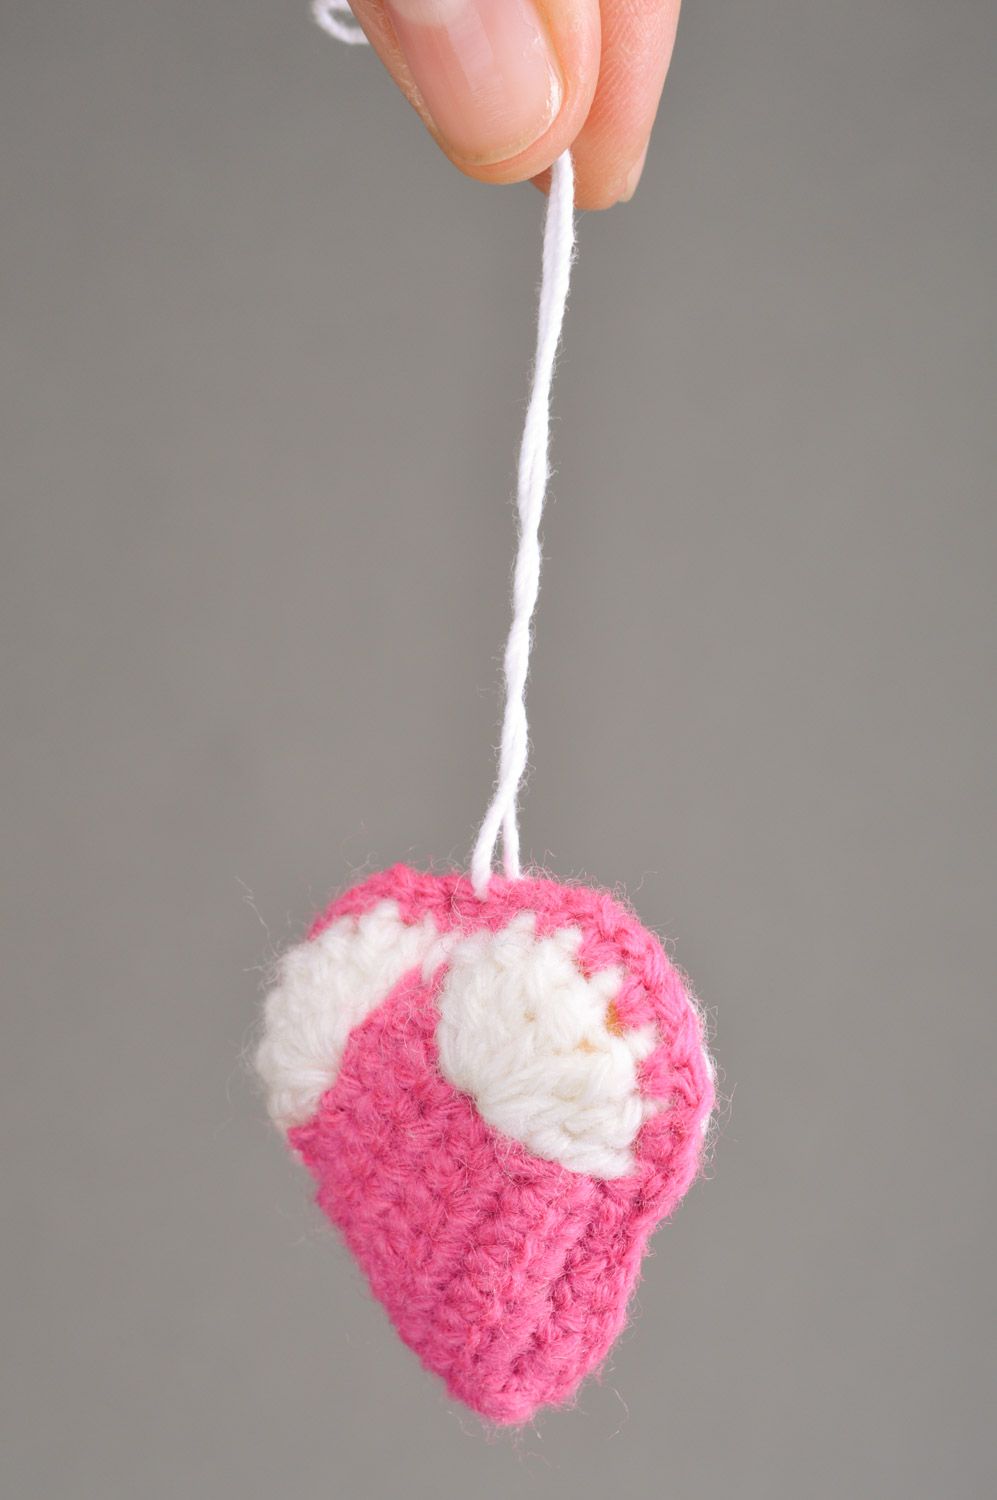 Мягкий брелок сердечко для ключей вязаный крючком ручной работы розовый с белым фото 3